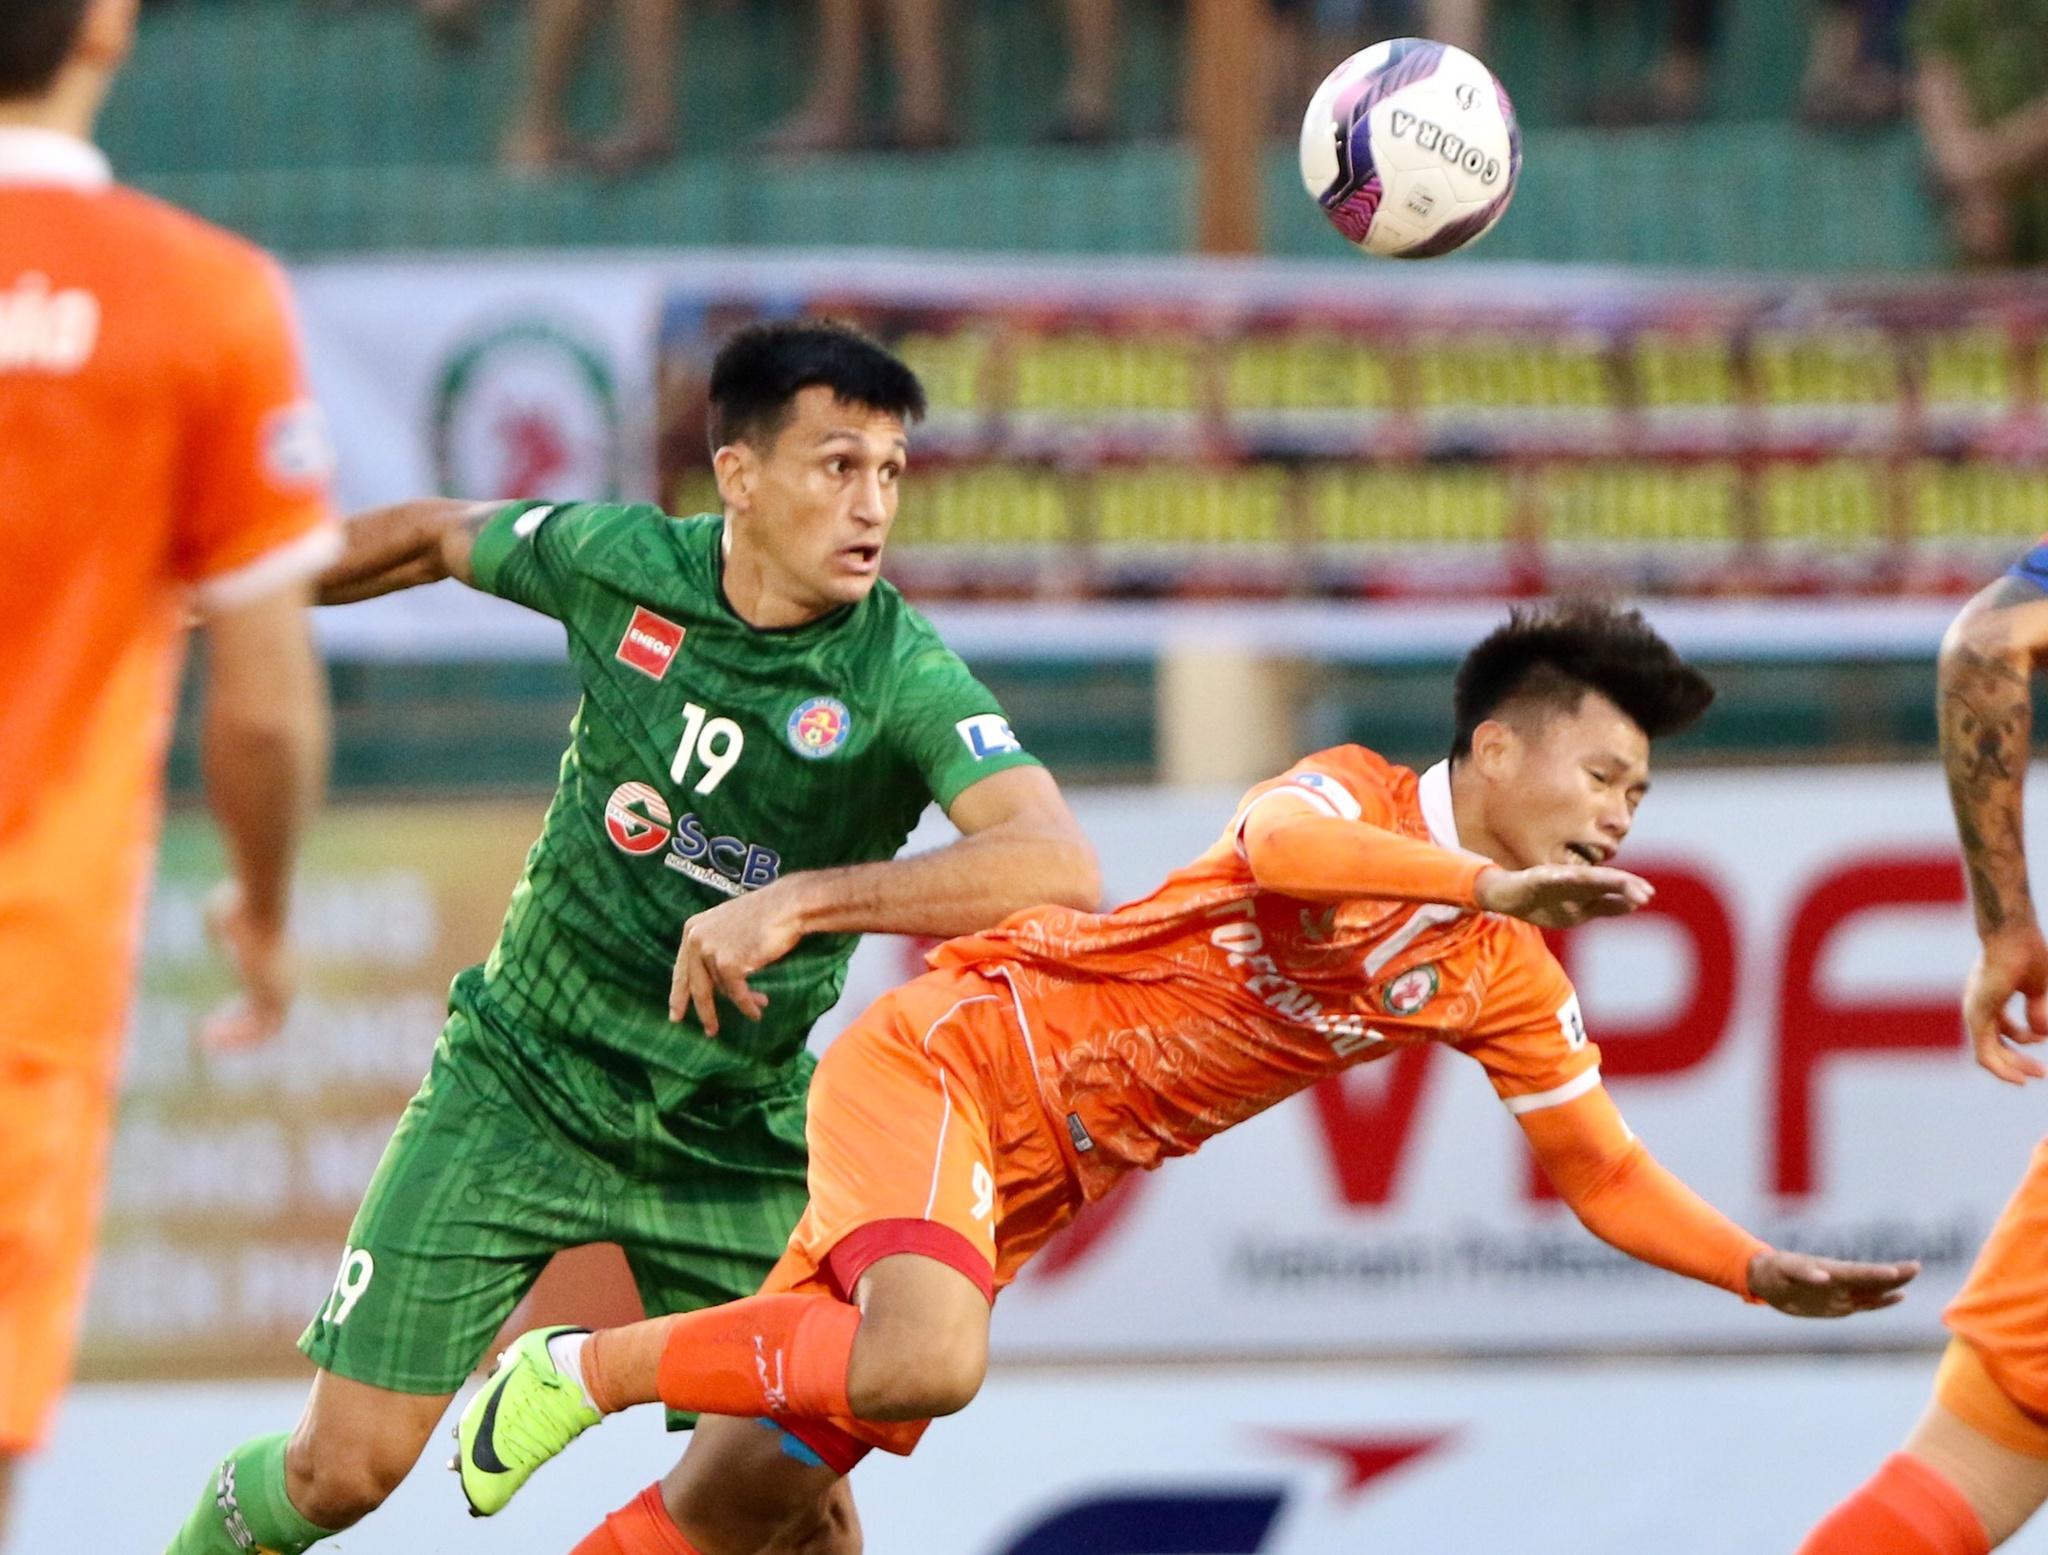 Kết quả V-League 2021, Bình Định 1-0 Sài Gòn FC: Hồ Tấn Tài khiến 'hung thần' Đỗ Merlo nín lặng! - ảnh 12